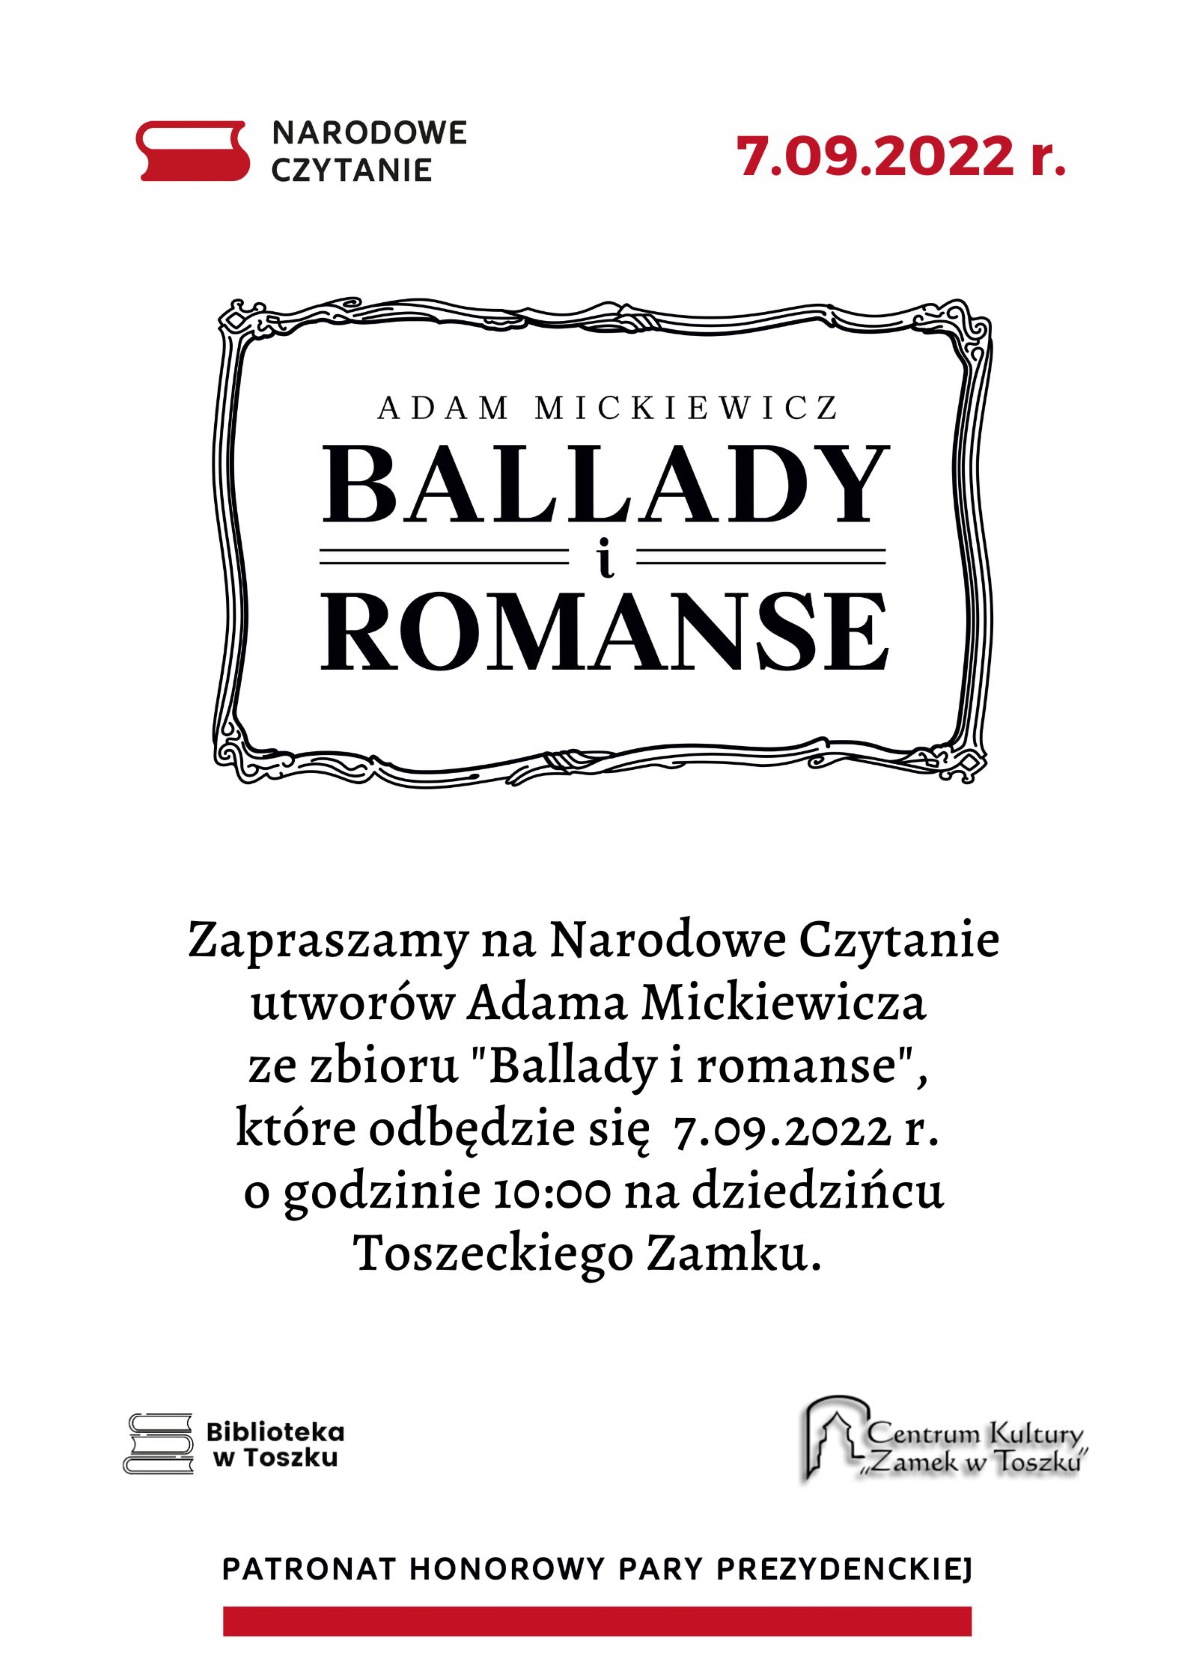 Zapraszamy na Narodowe Czytanie utworów Adama Mickiewicza ze zbioru "Ballady i romanse", które odbędzie się 7.09.2022 r. o godzinie 10:00 na dziedzińcu Toszeckiego Zamku.